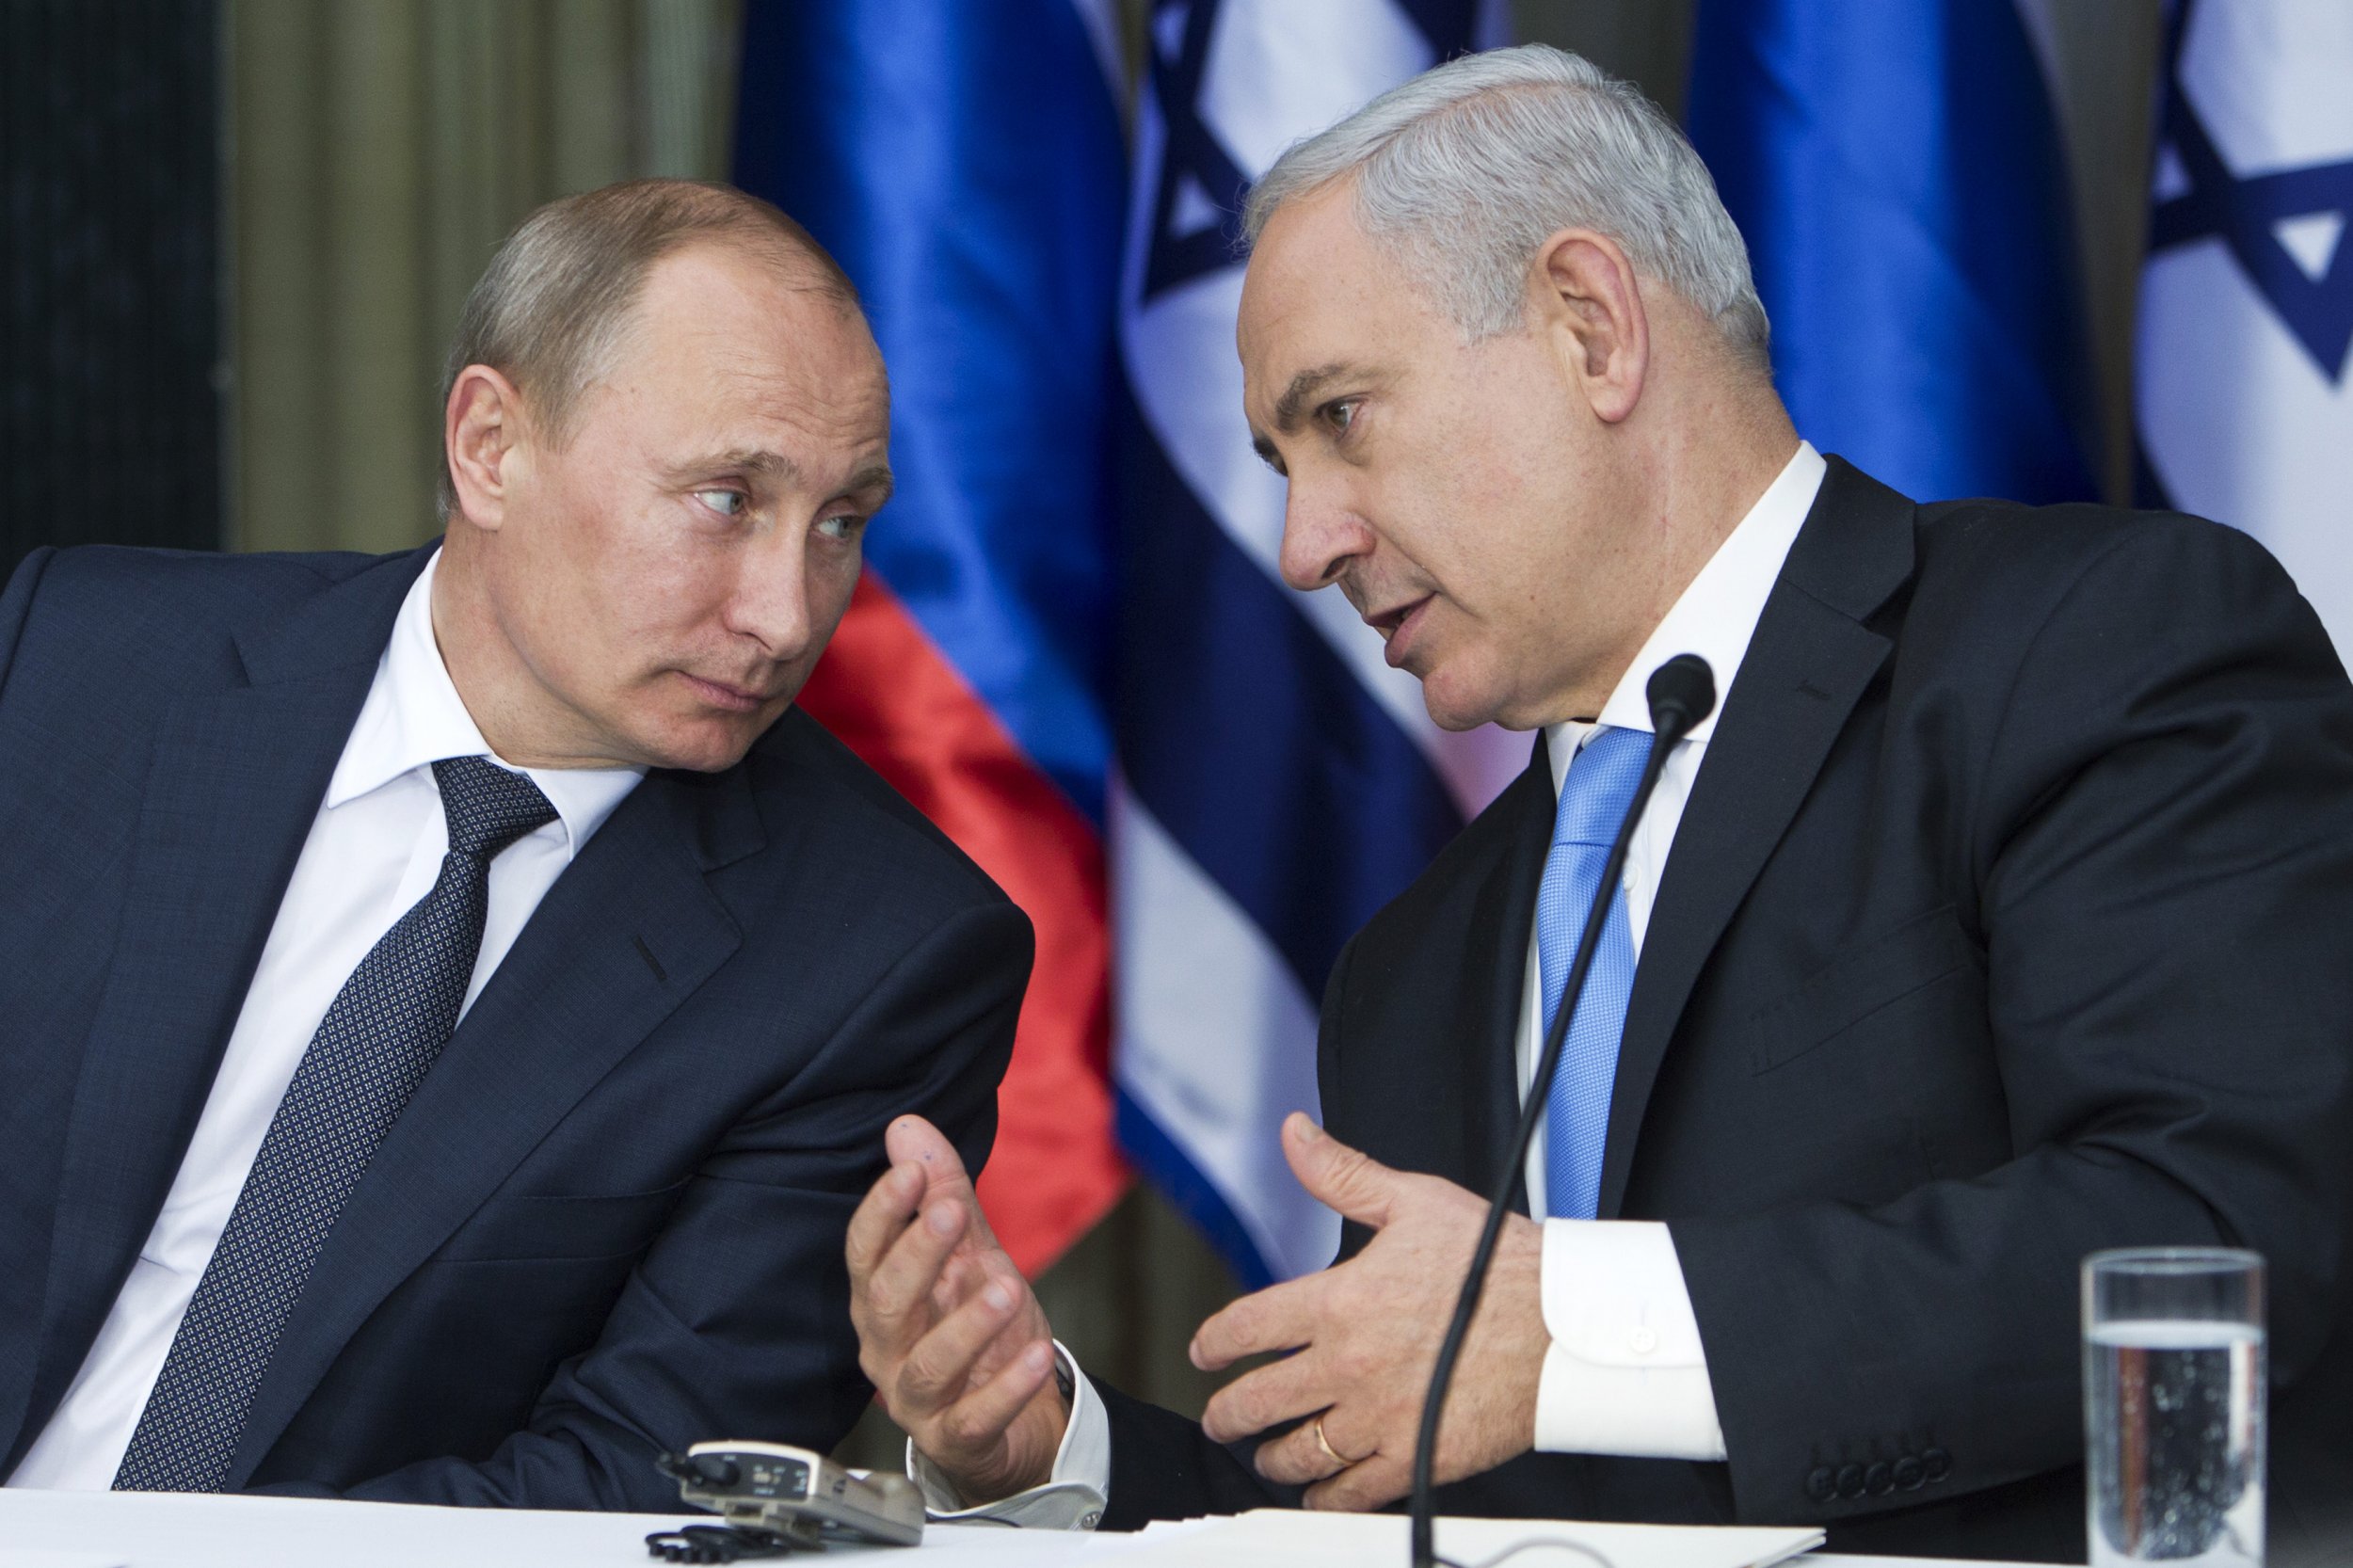 Mosca ha avvertito Israele di non mandare armi all'Ucraina